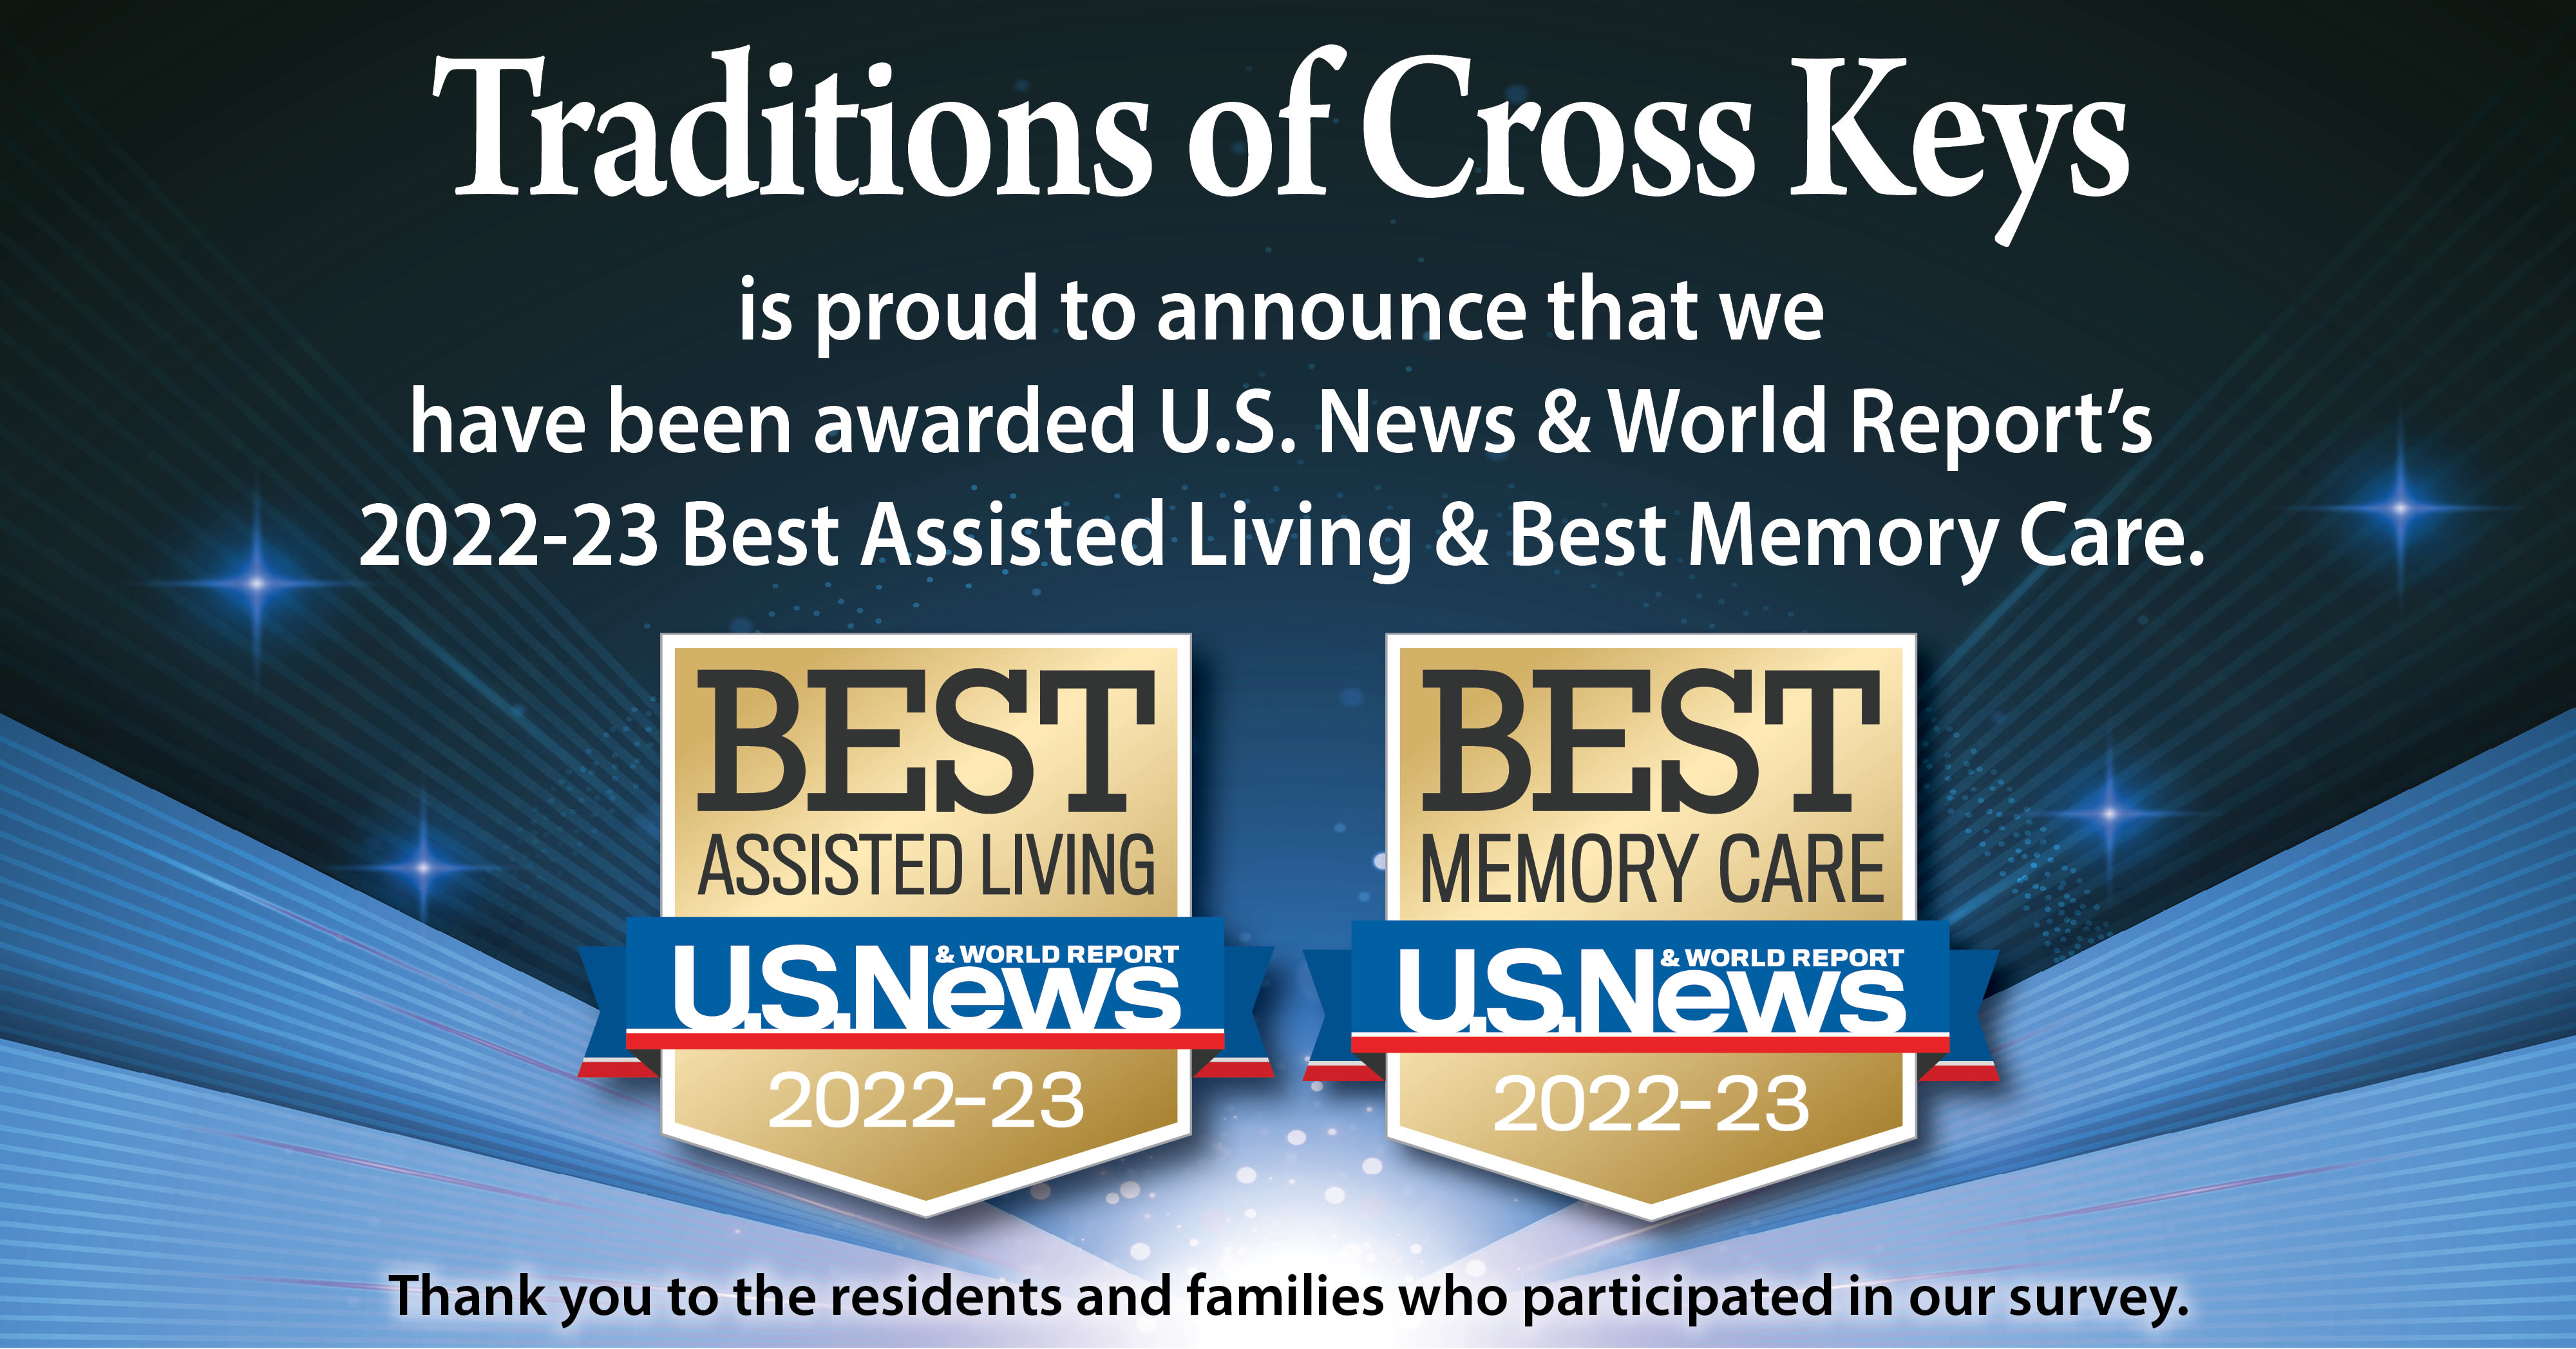 US News Best Senior Living Award 2022 for Traditions of Cross Keys